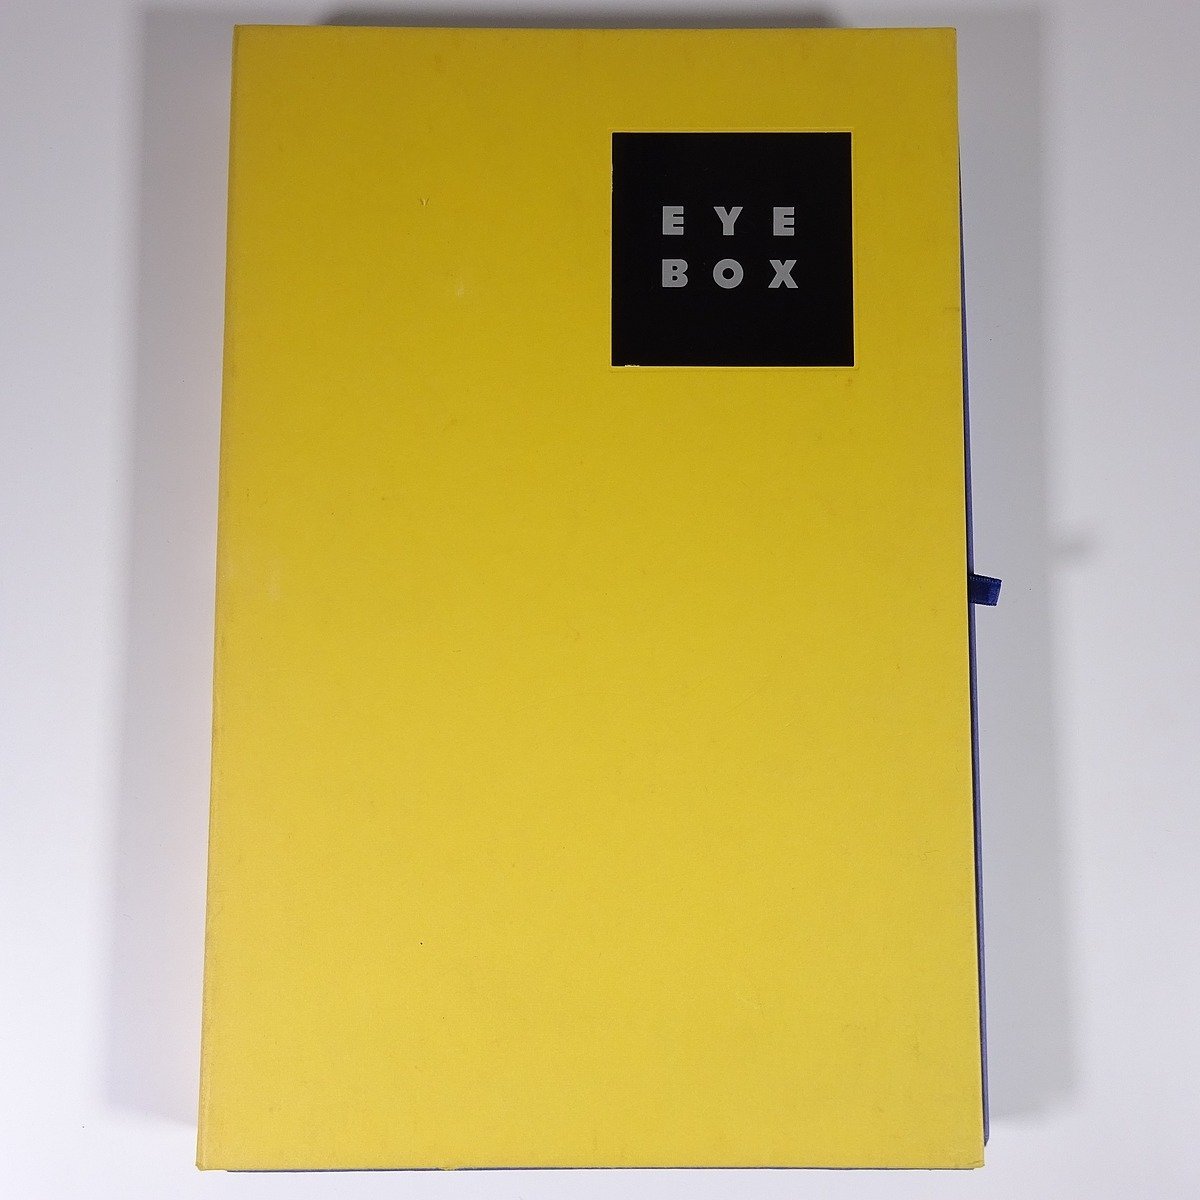 طباعة EYE BOX والمعلومات المرئية في شركة Comtex للقرن الحادي والعشرين., المحدودة 1992 كتاب كبير الحجم في صندوق معالجة الصور والمؤثرات البصرية, إلخ., فن, ترفيه, تلوين, تعليق, مراجعة